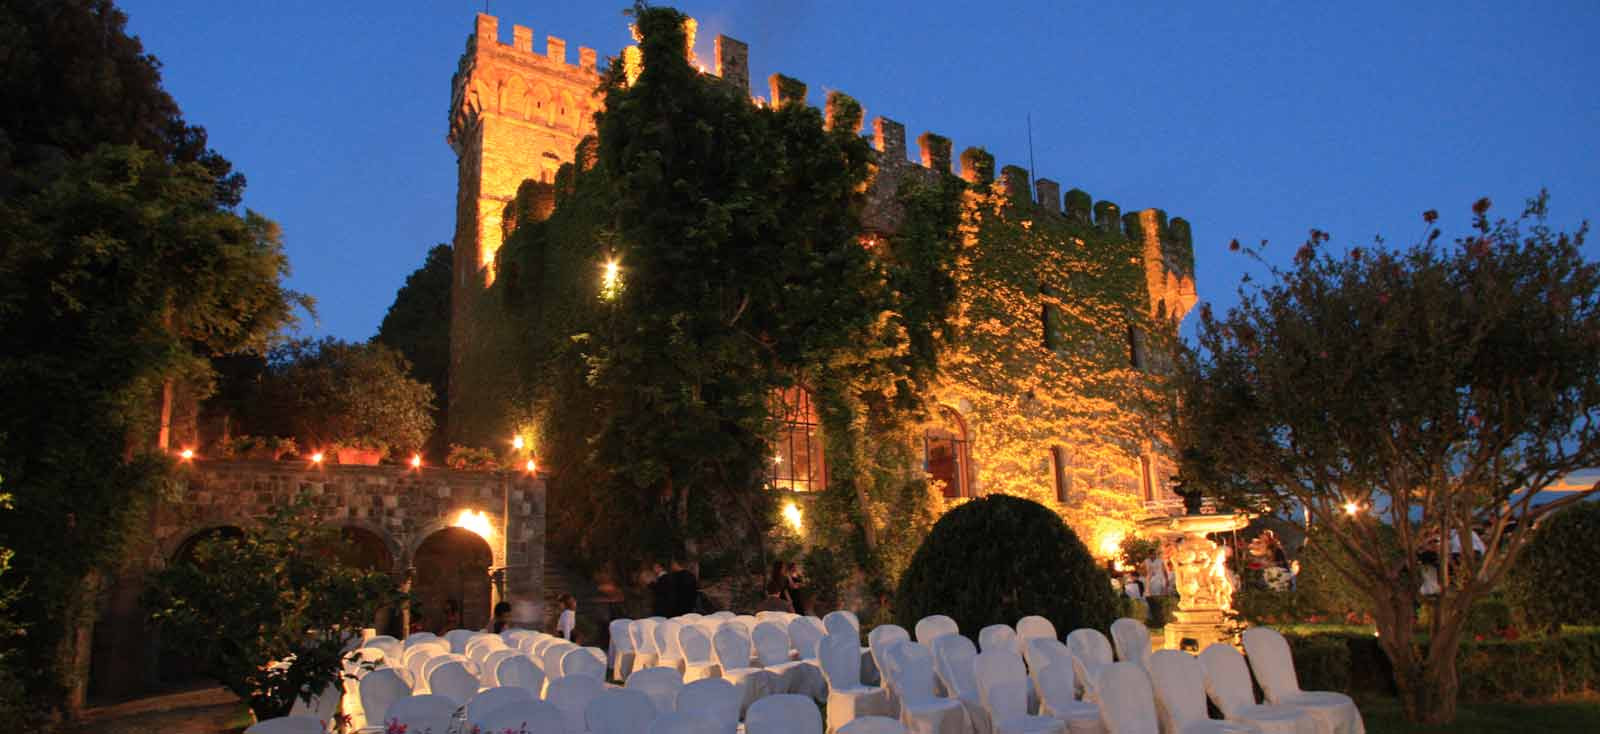 Hochzeit In Italien
 Hochzeit in Italien Traumhochzeit in Italien Heiraten in